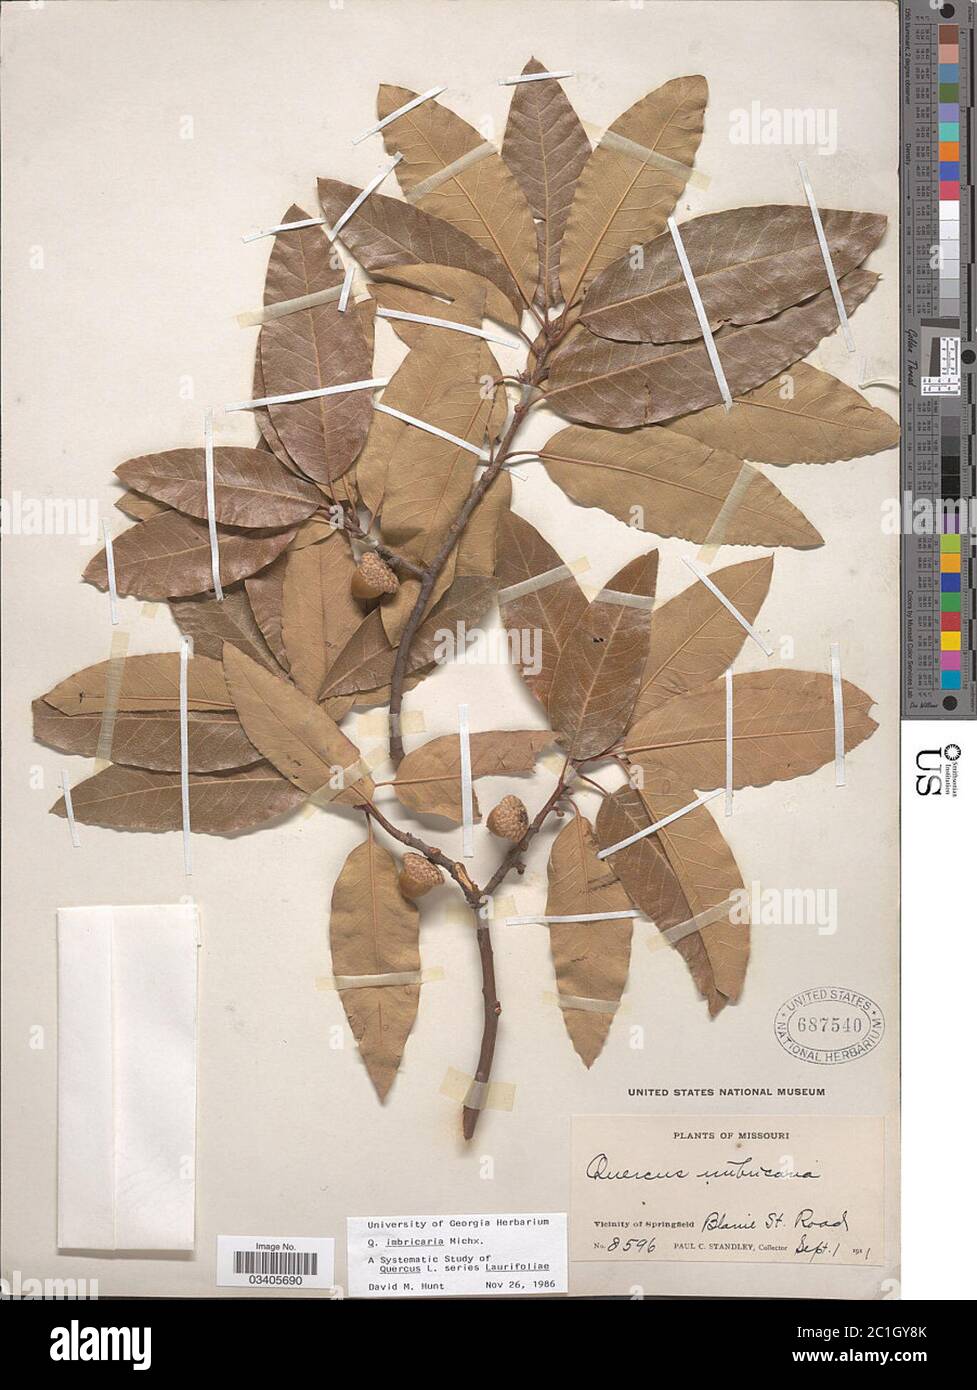 Quercus imbricaria Michx Quercus imbricaria Michx. Stock Photo